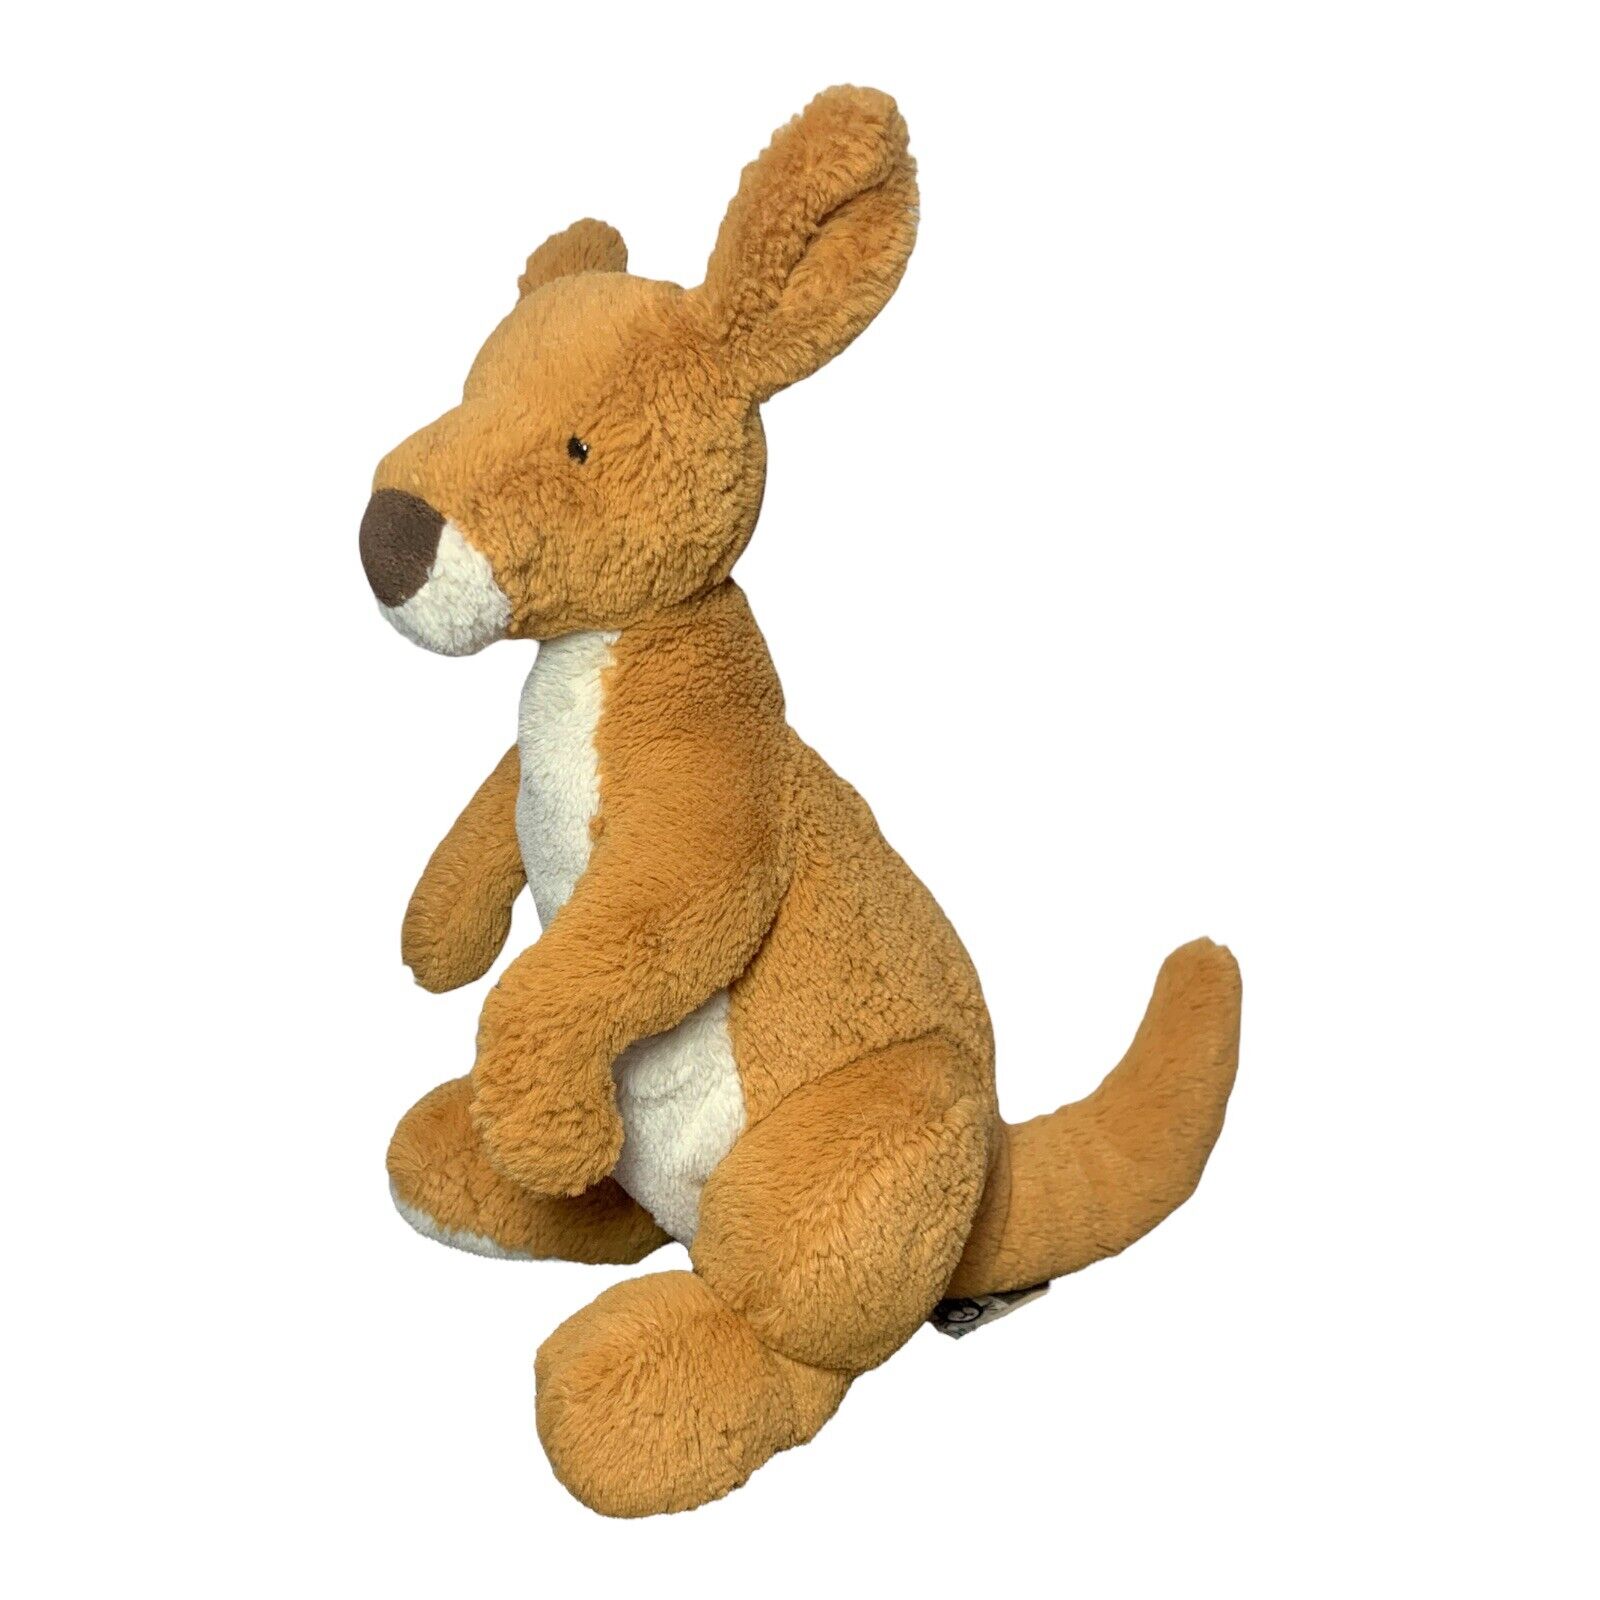 Jellycat Bashful Kangaroo 12" Stuffed Plush No Joey Brown And White Soft Cuddly